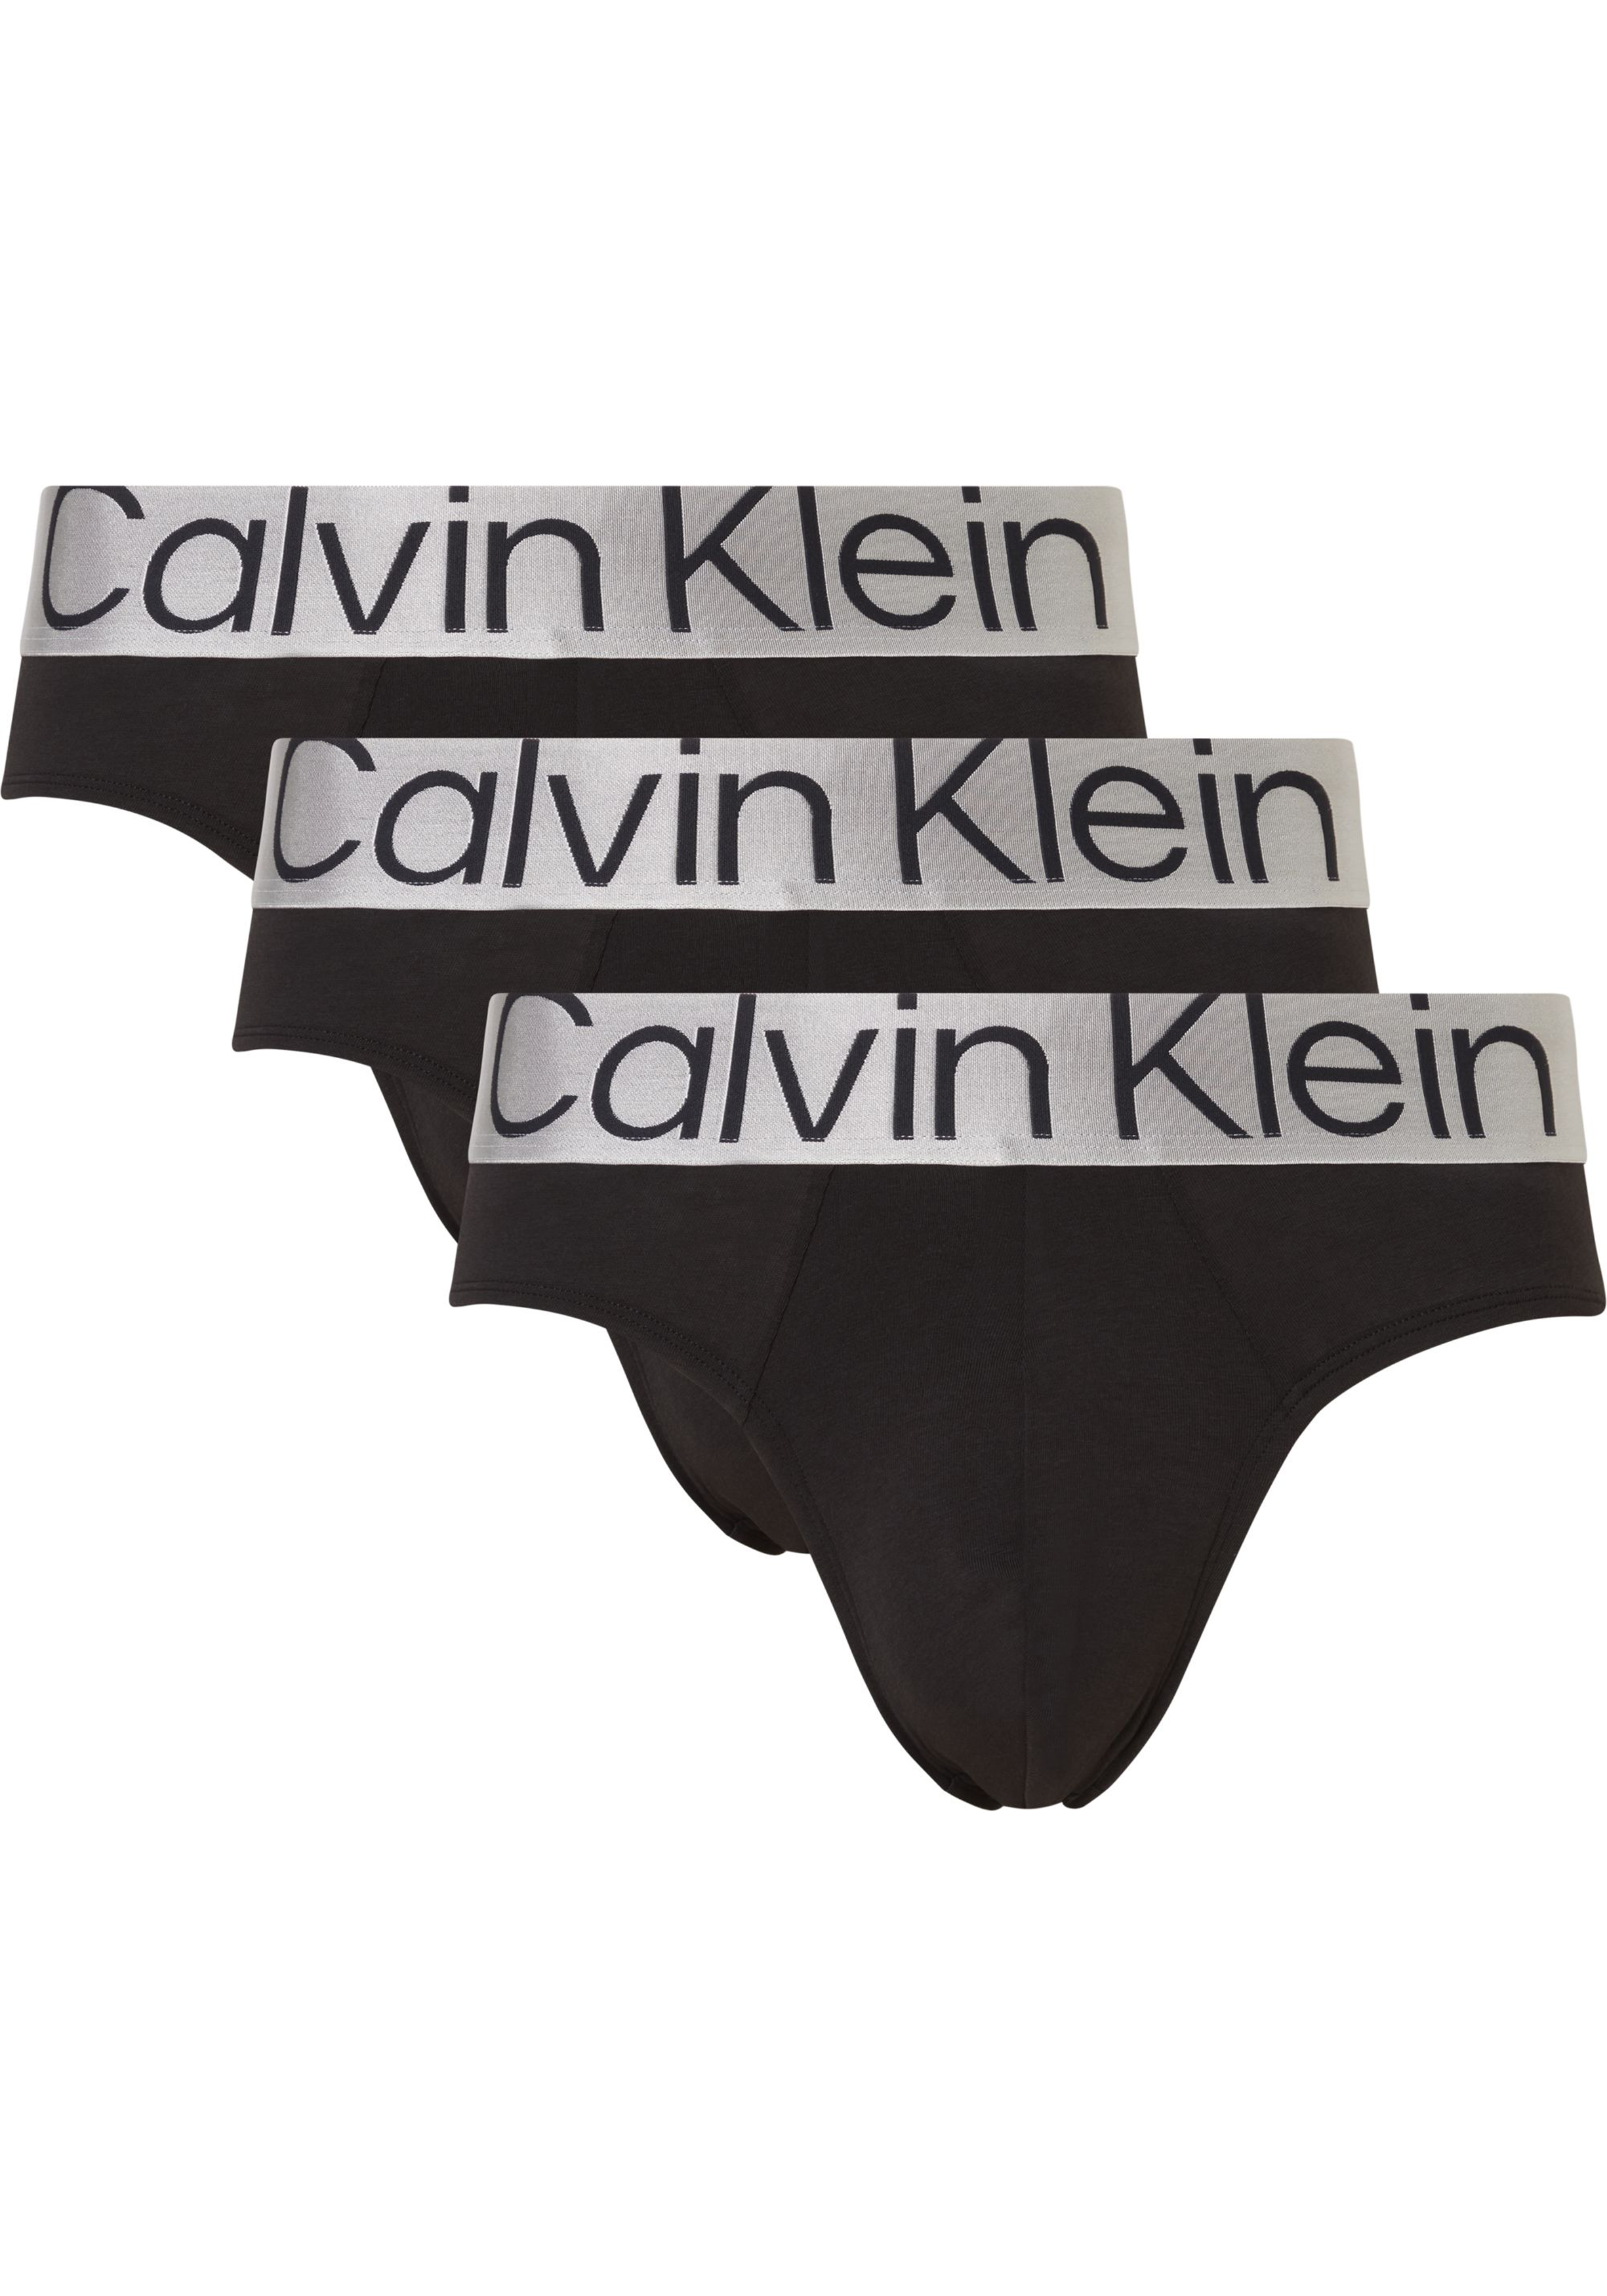 Calvin Klein Hipster Briefs (3-pack), heren slips, zwart